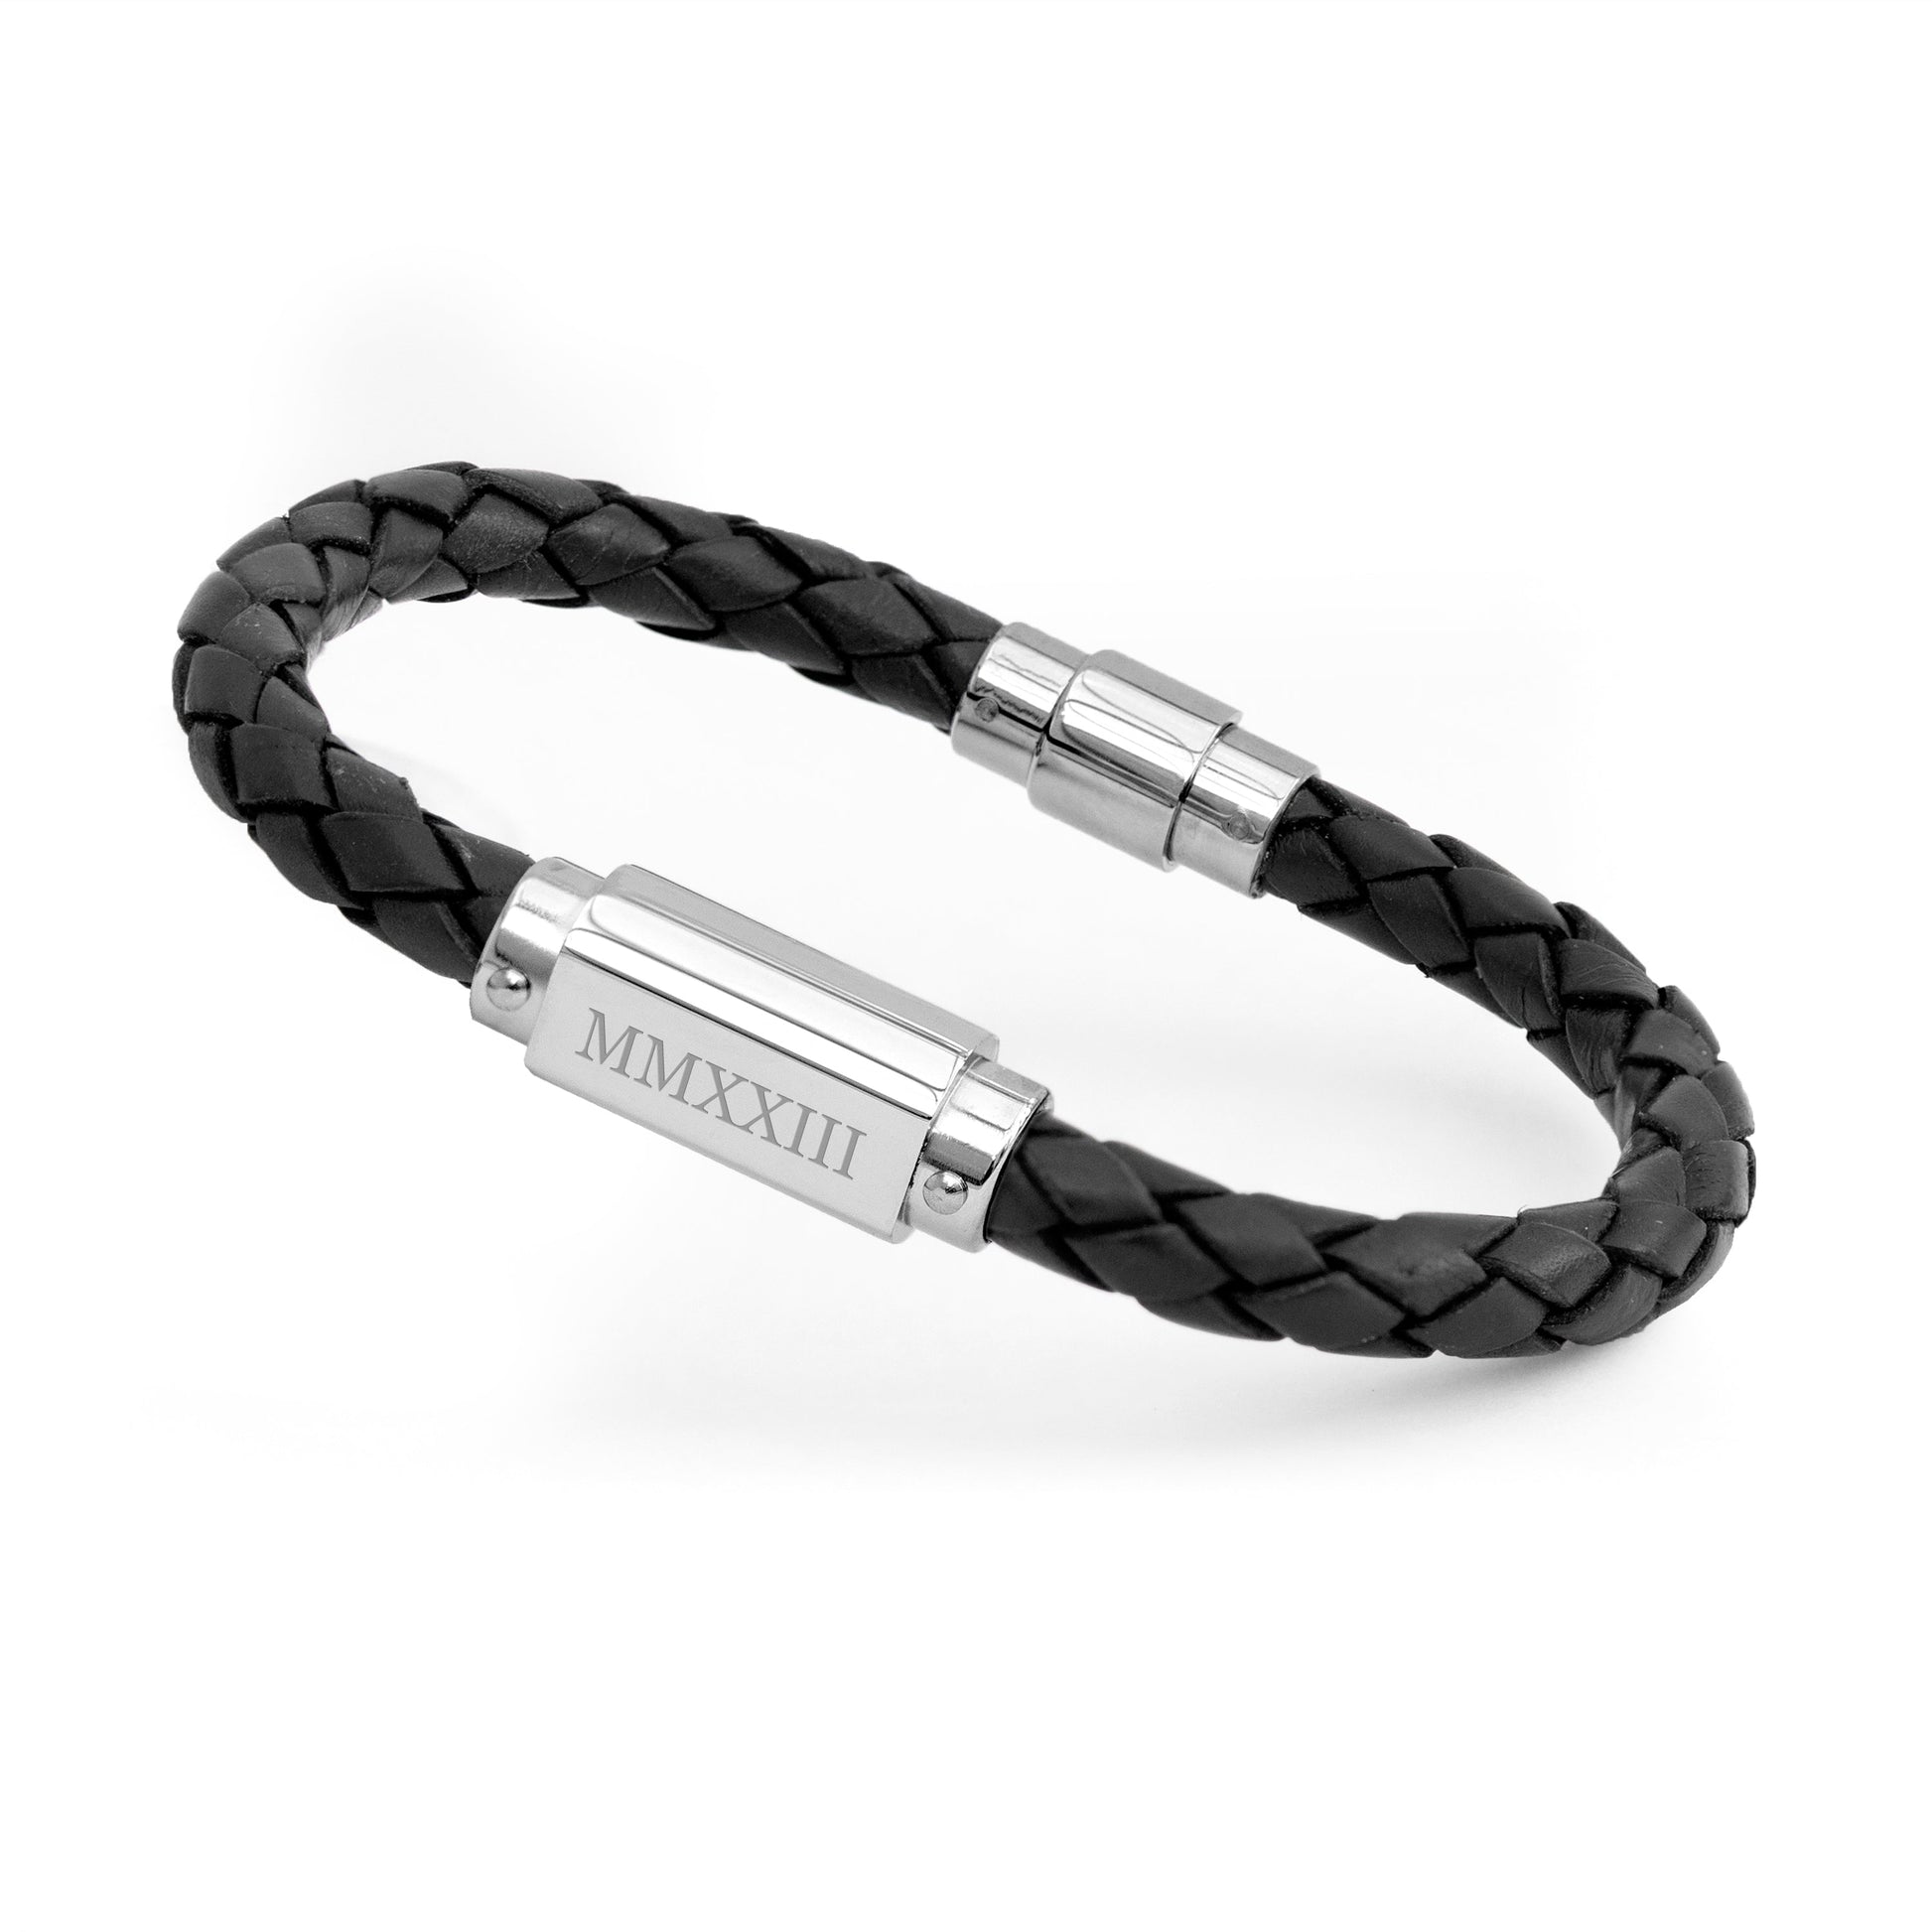 Personalized Men's Bracelets - Personalized Men's Roman Numerals Luxury Black Leather Bracelet 